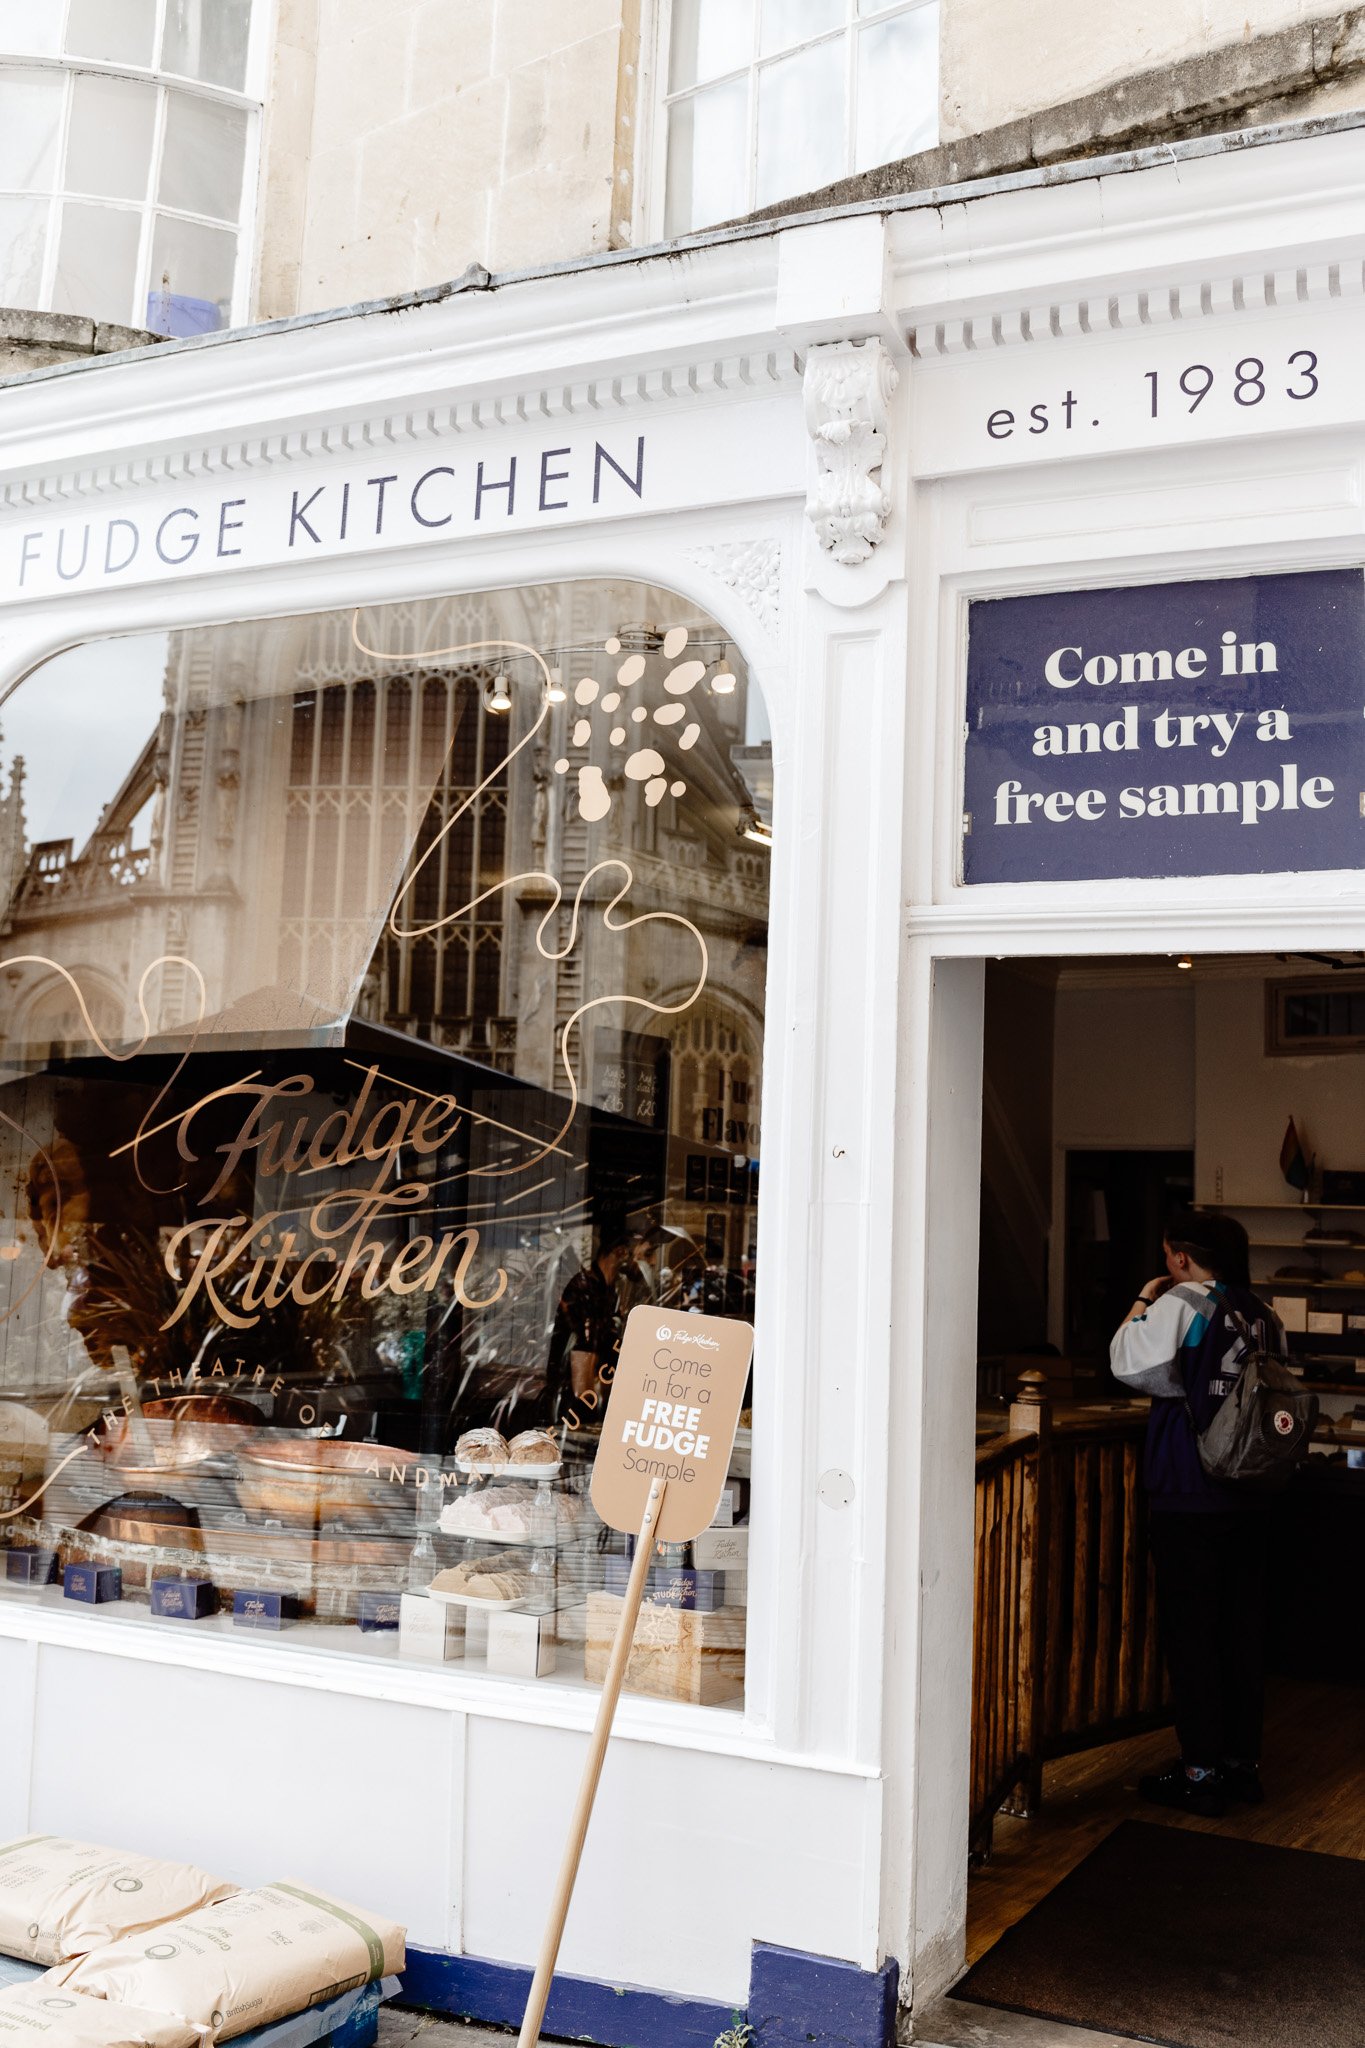 Bath, UK – Fudge Kitchen Shopfront